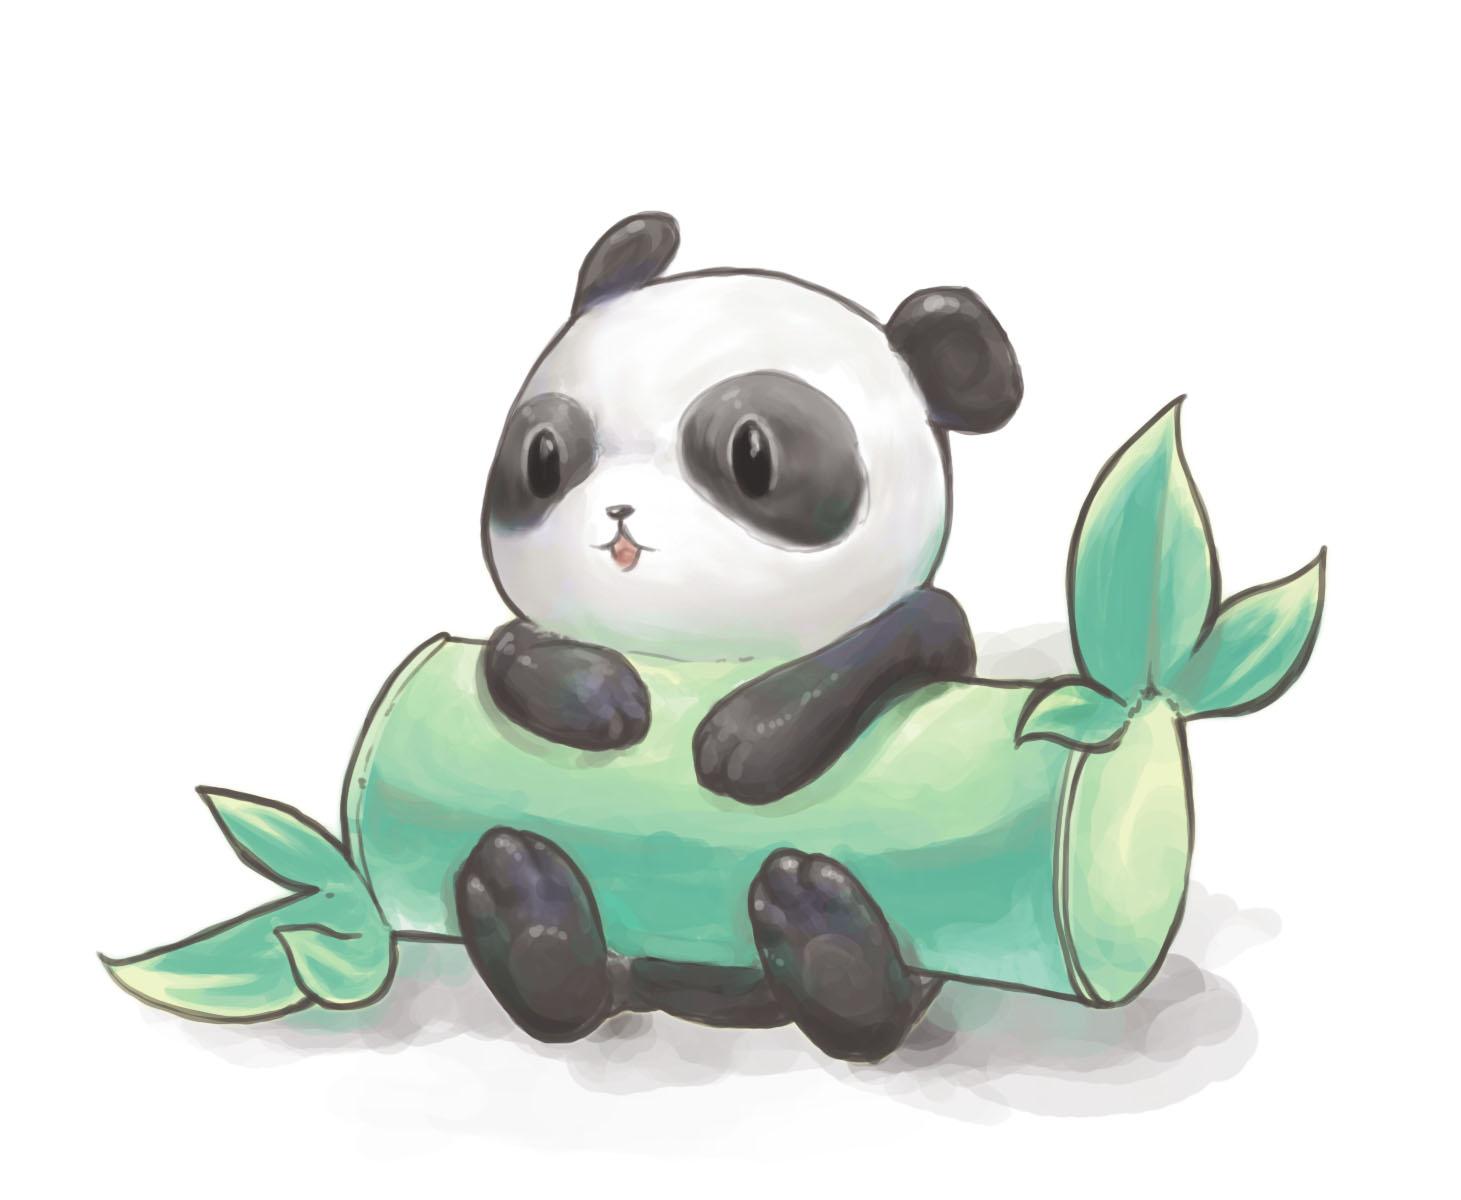 Free download Cute Panda Drawings Tumblr Amazing Wallpaper